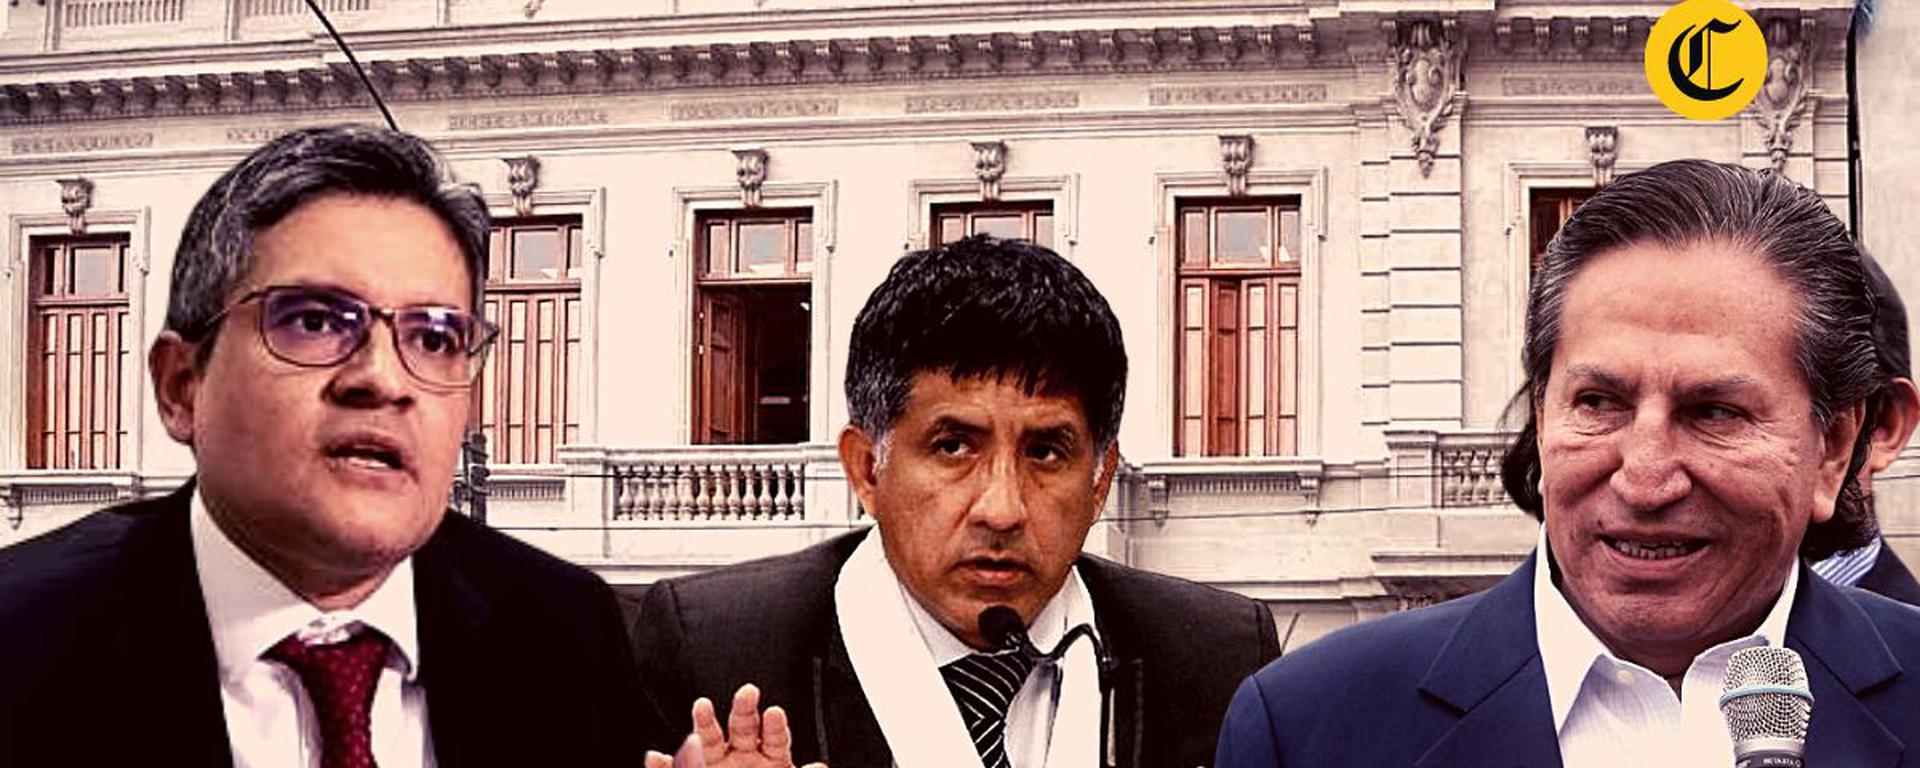 Alejandro Toledo enfrenta un pedido de 20 años de condena: así expuso la fiscalía su acusación 